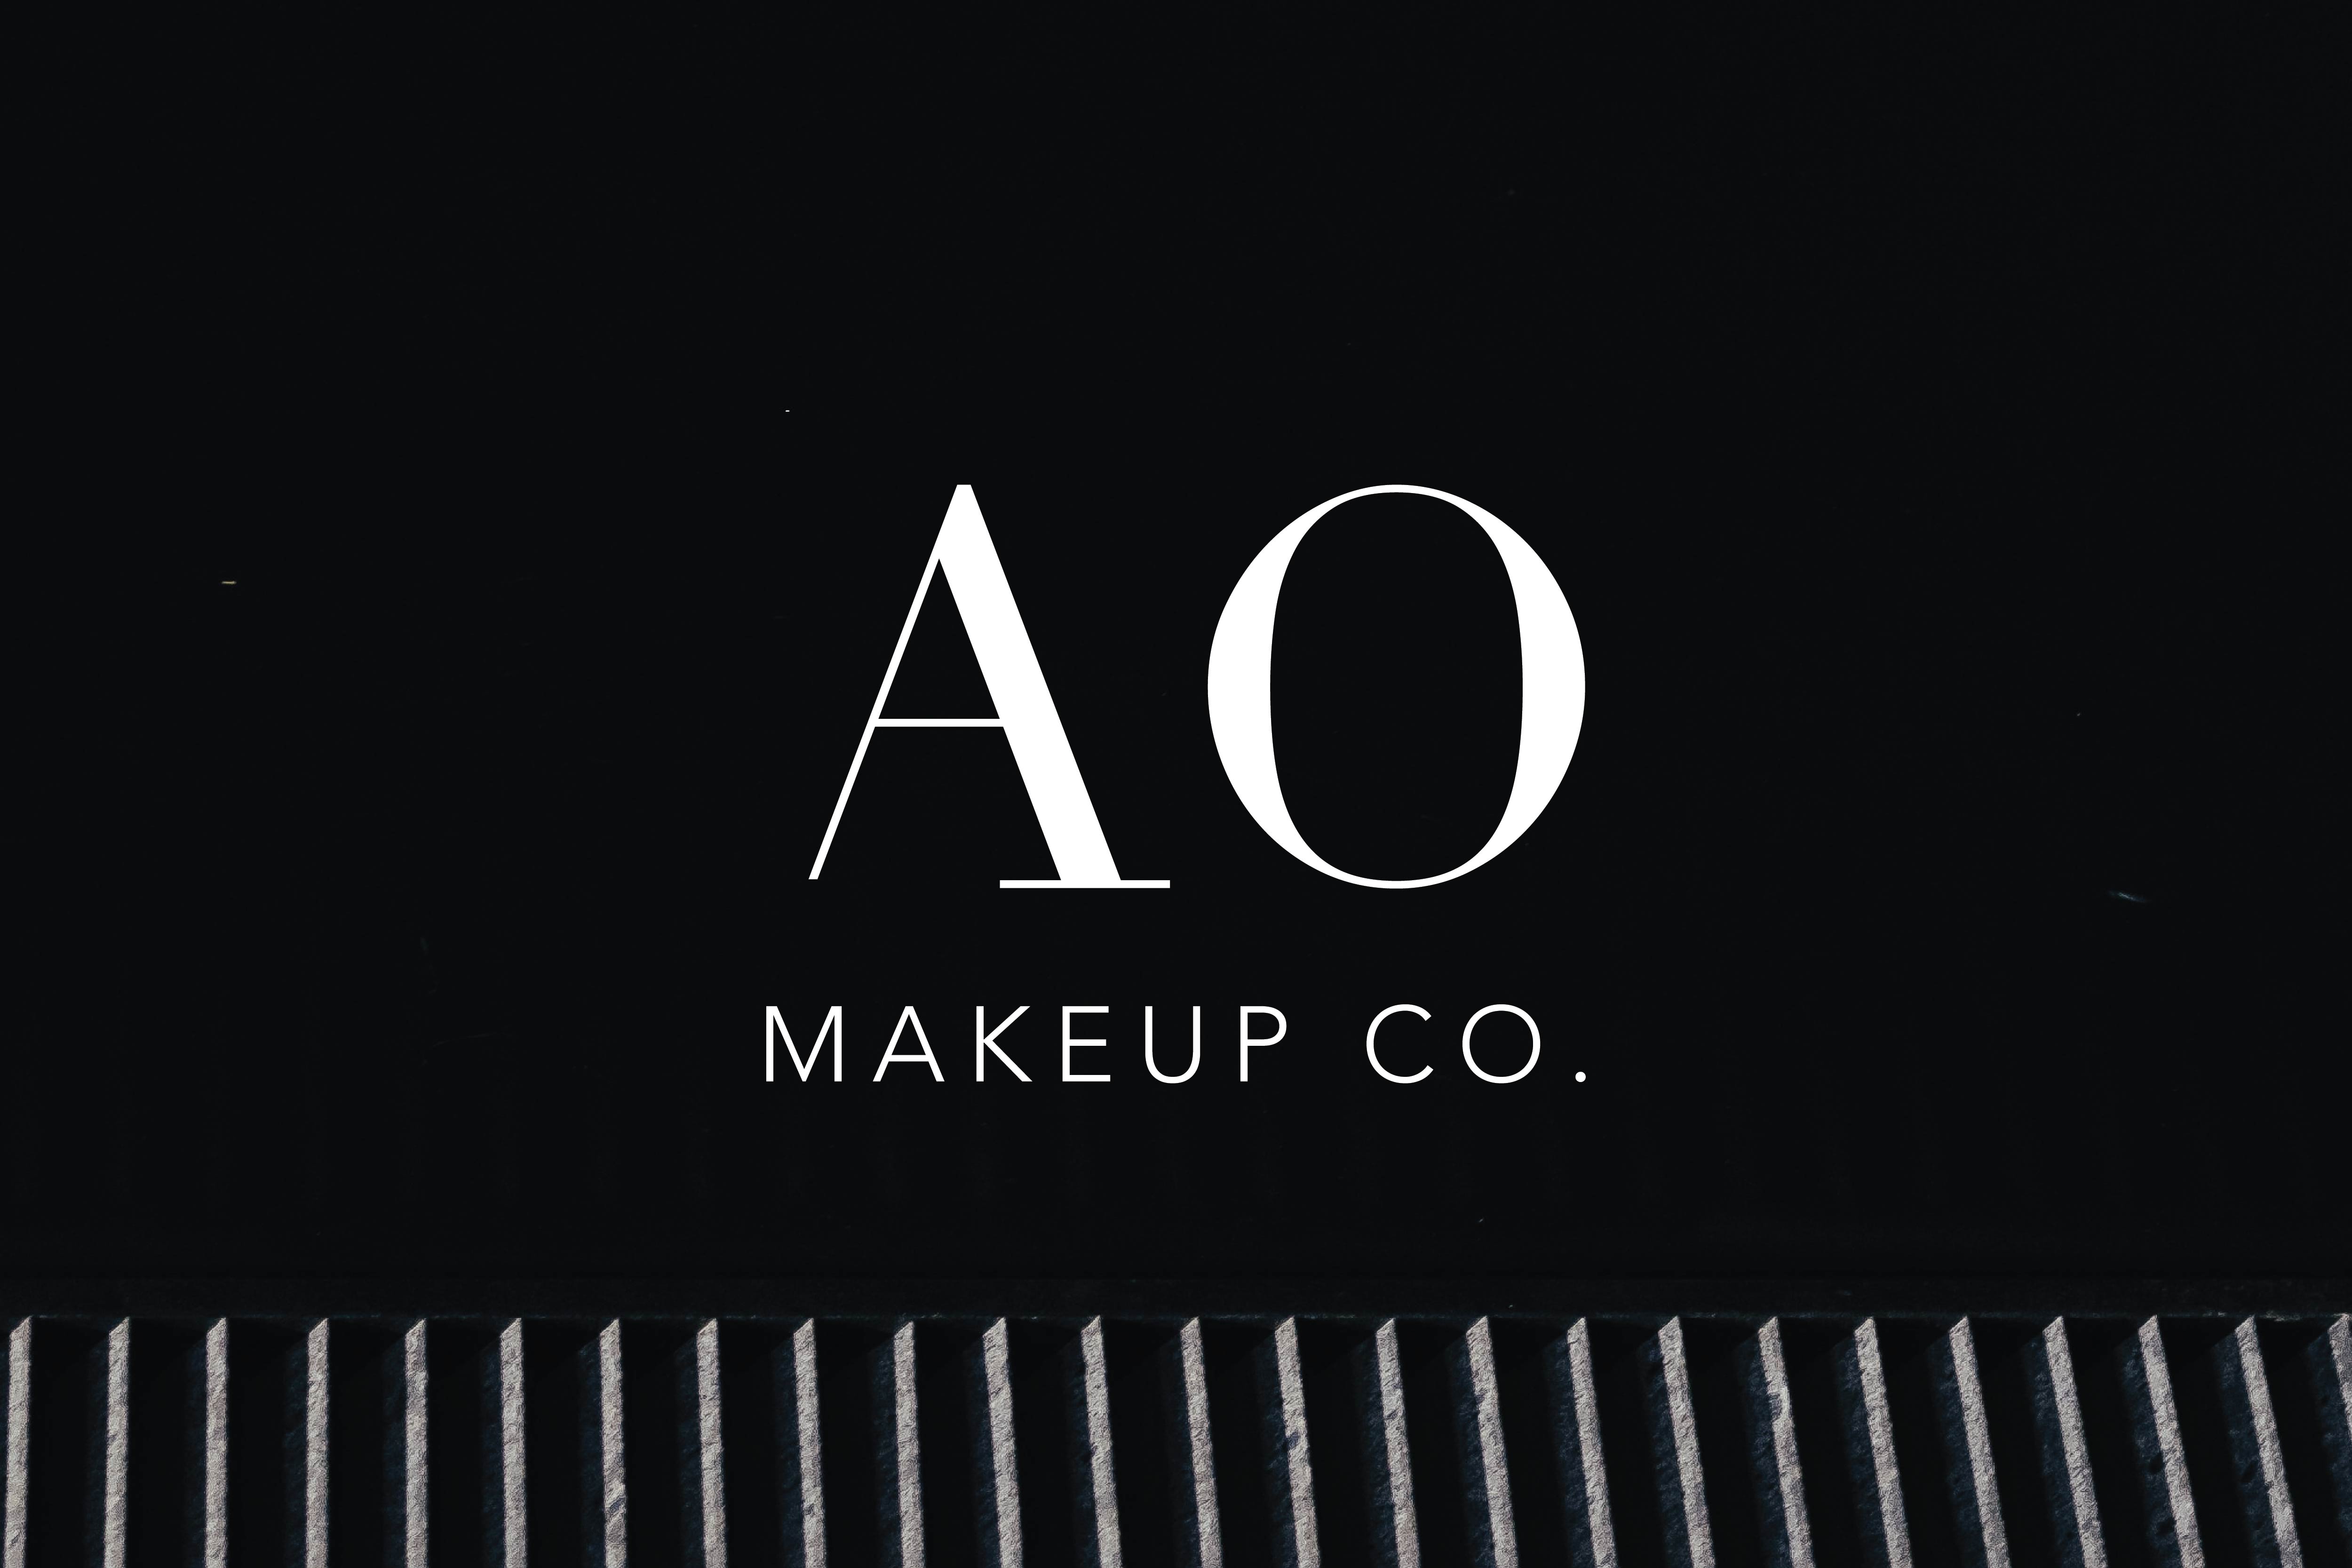 AO Makeup Co.